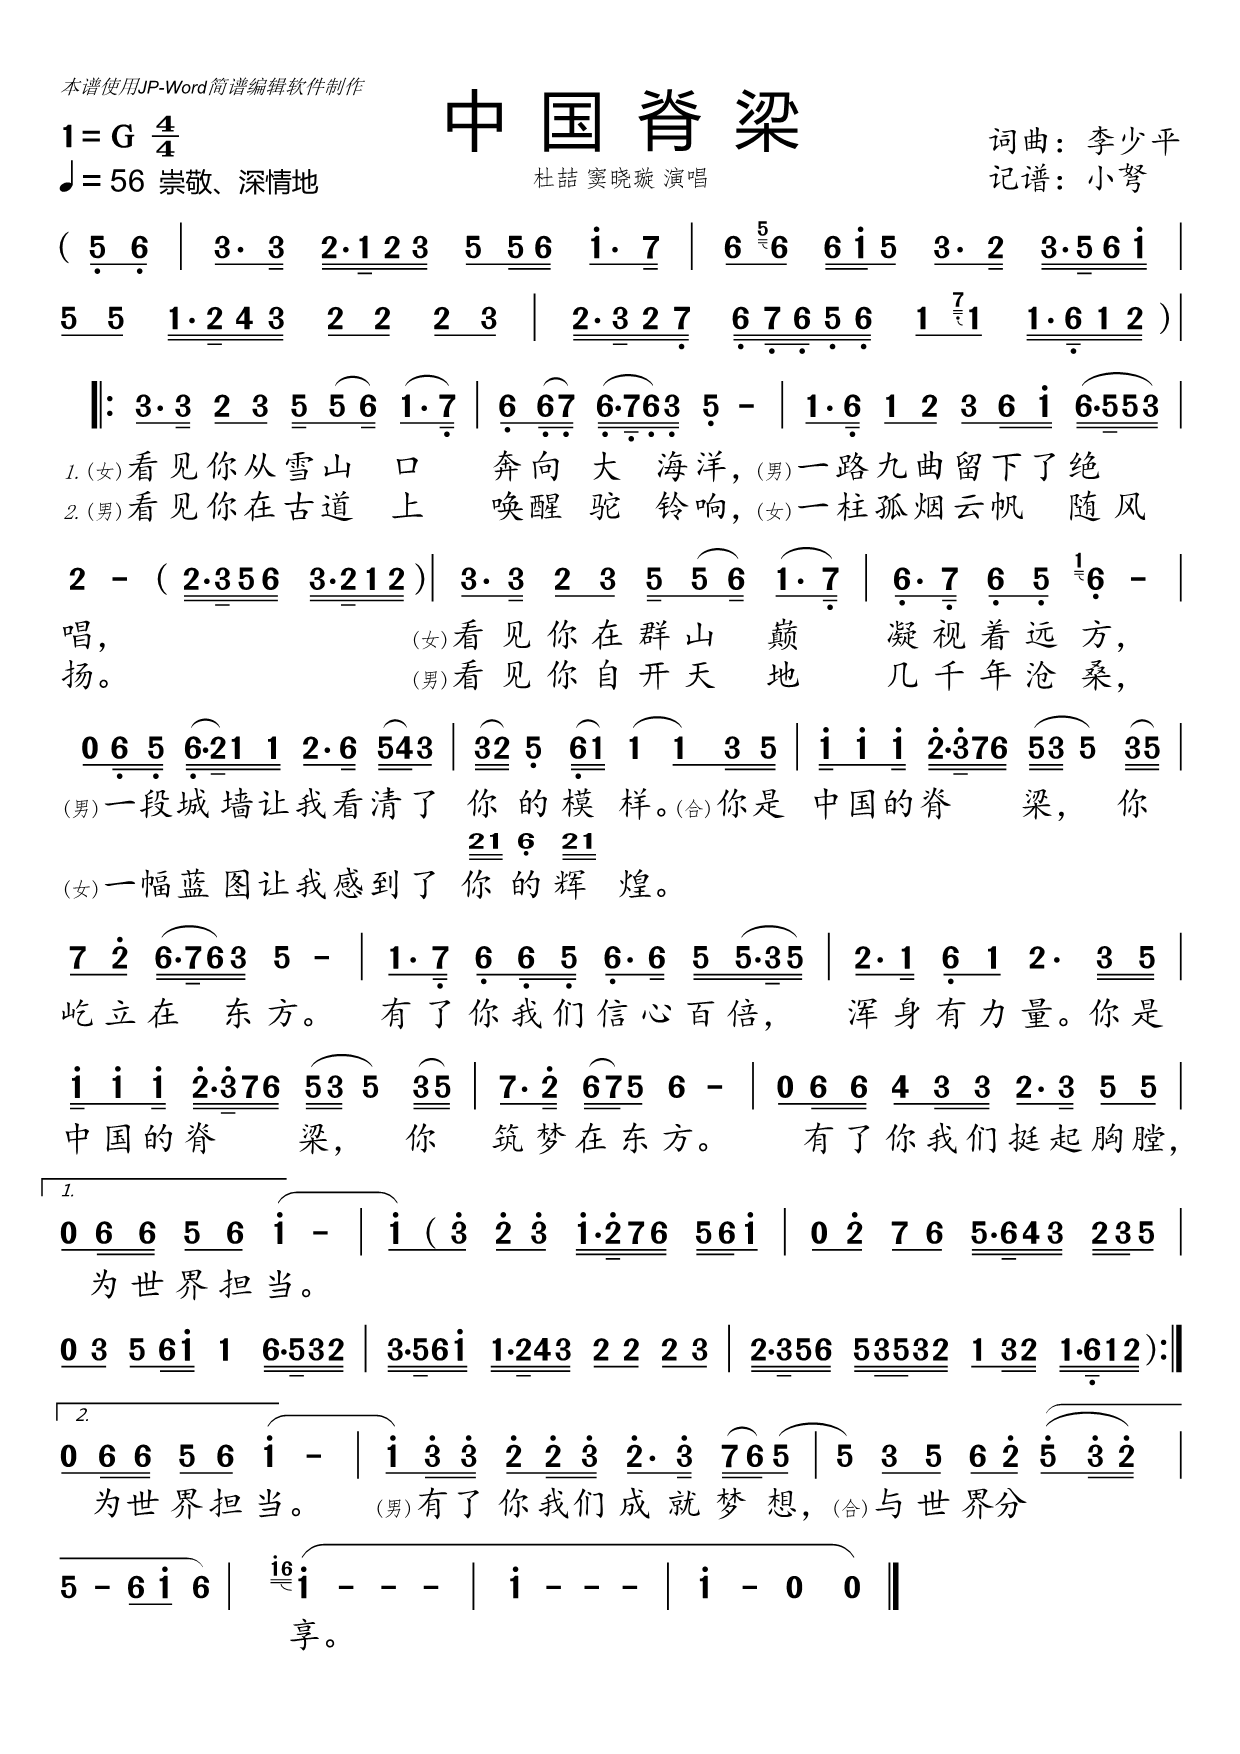 中国脊梁歌词图片